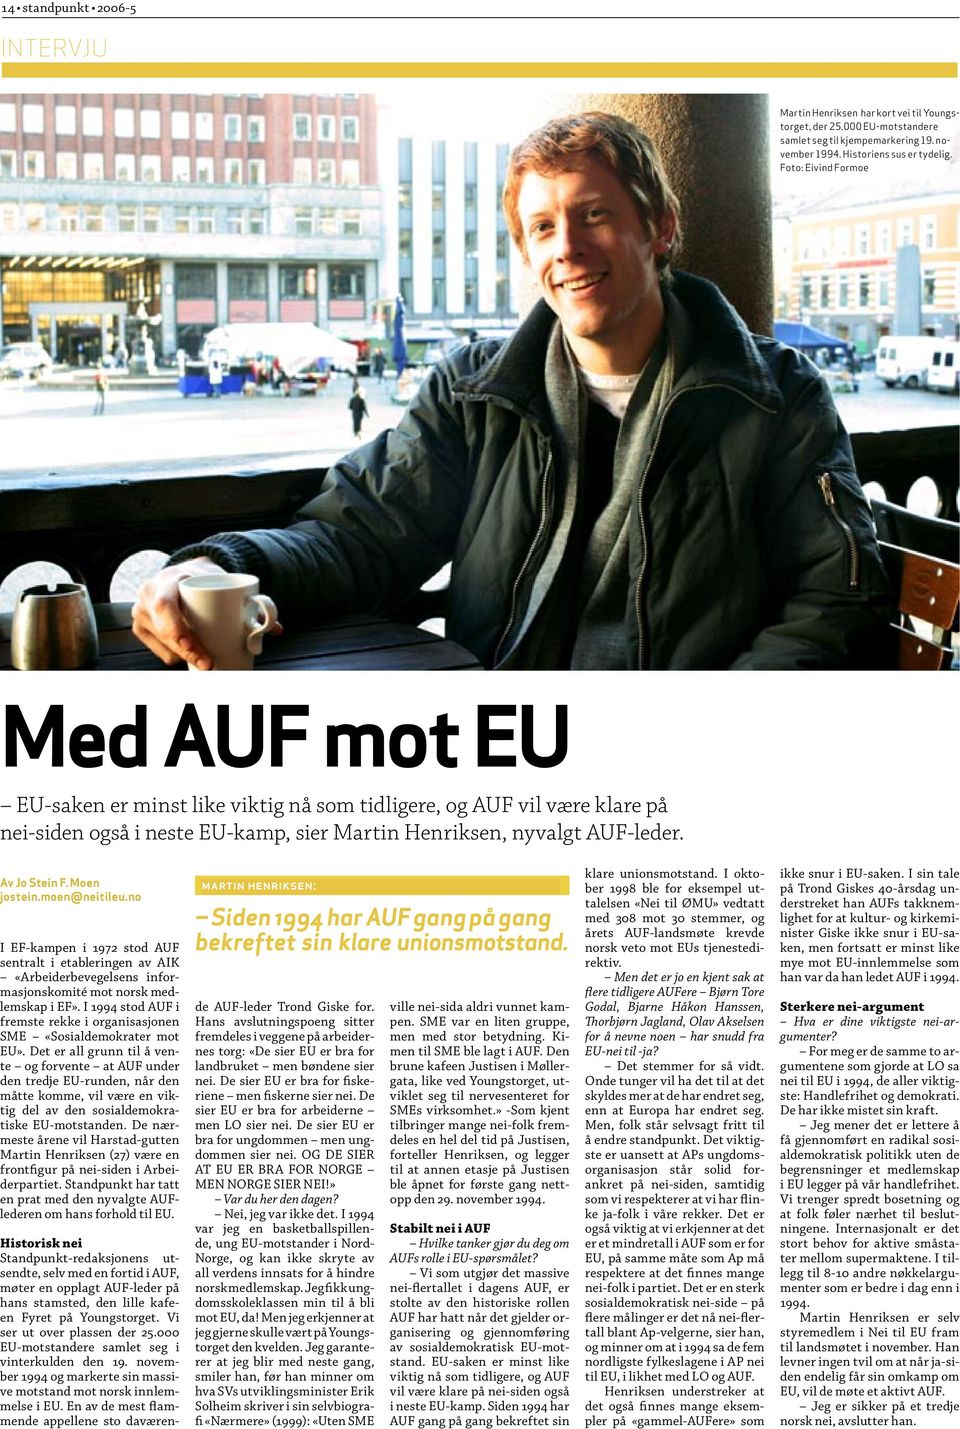 Moen ostein.moen@neitileu.no EF-kampen i 1972 stod AUF entralt i etableringen av AIK «Arbeiderbevegelsens inforasjonskomité mot norsk medemskap i EF».